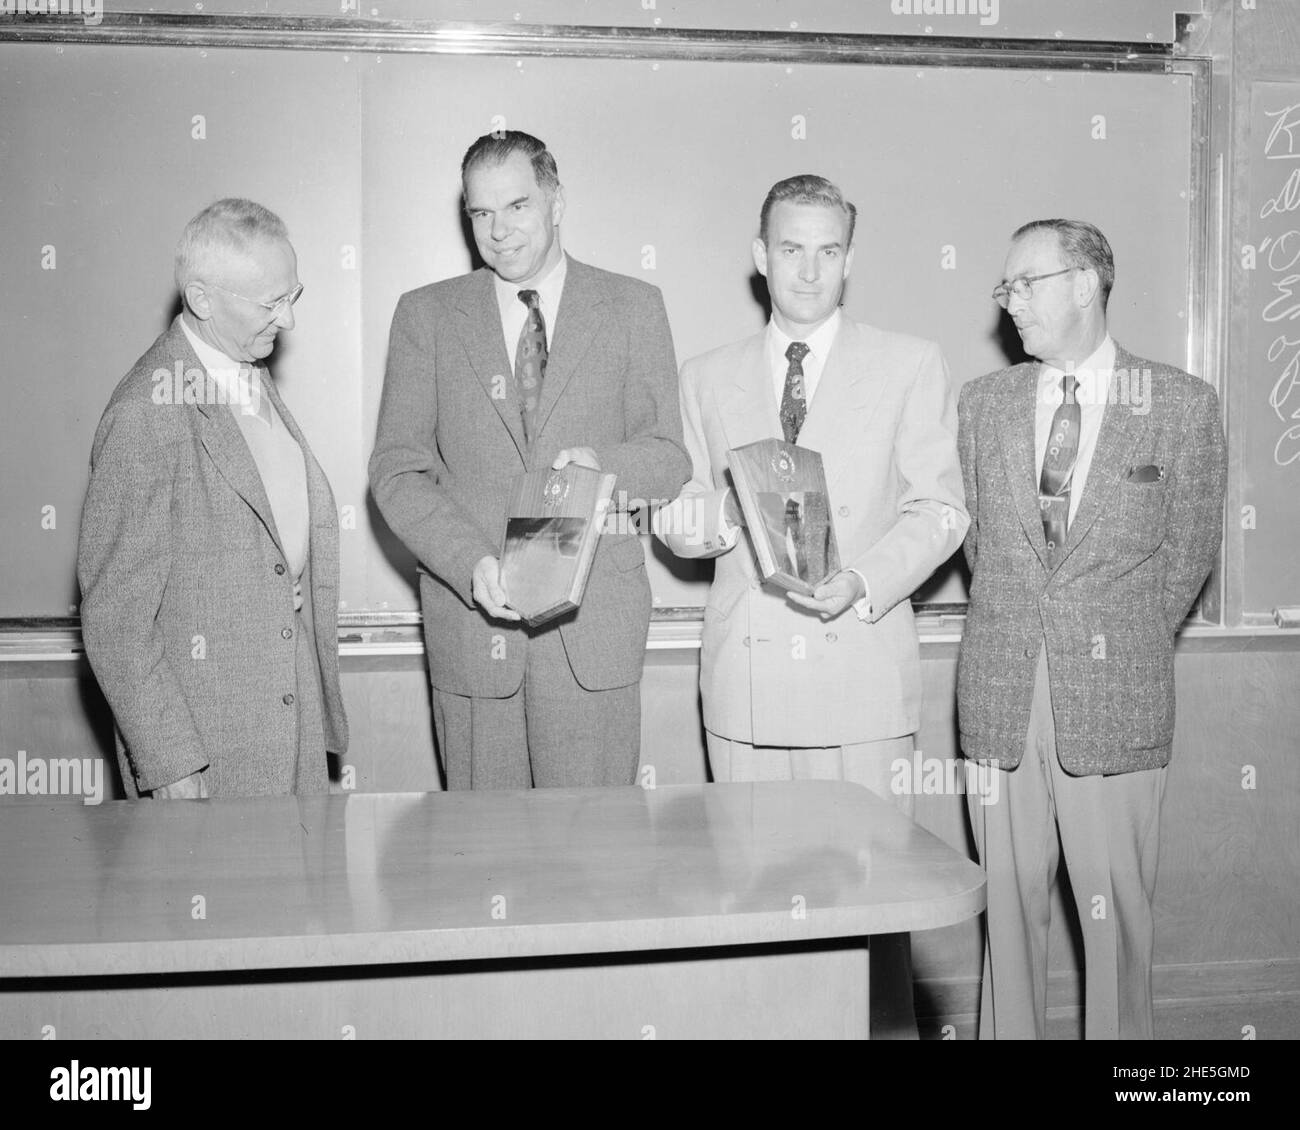 Safety awards. Left to right- Donald Cooksey, Glenn Seaborg, M. Leavitt, and Carroll Winterstein. Photograph taken September 22, 1955 Stock Photo